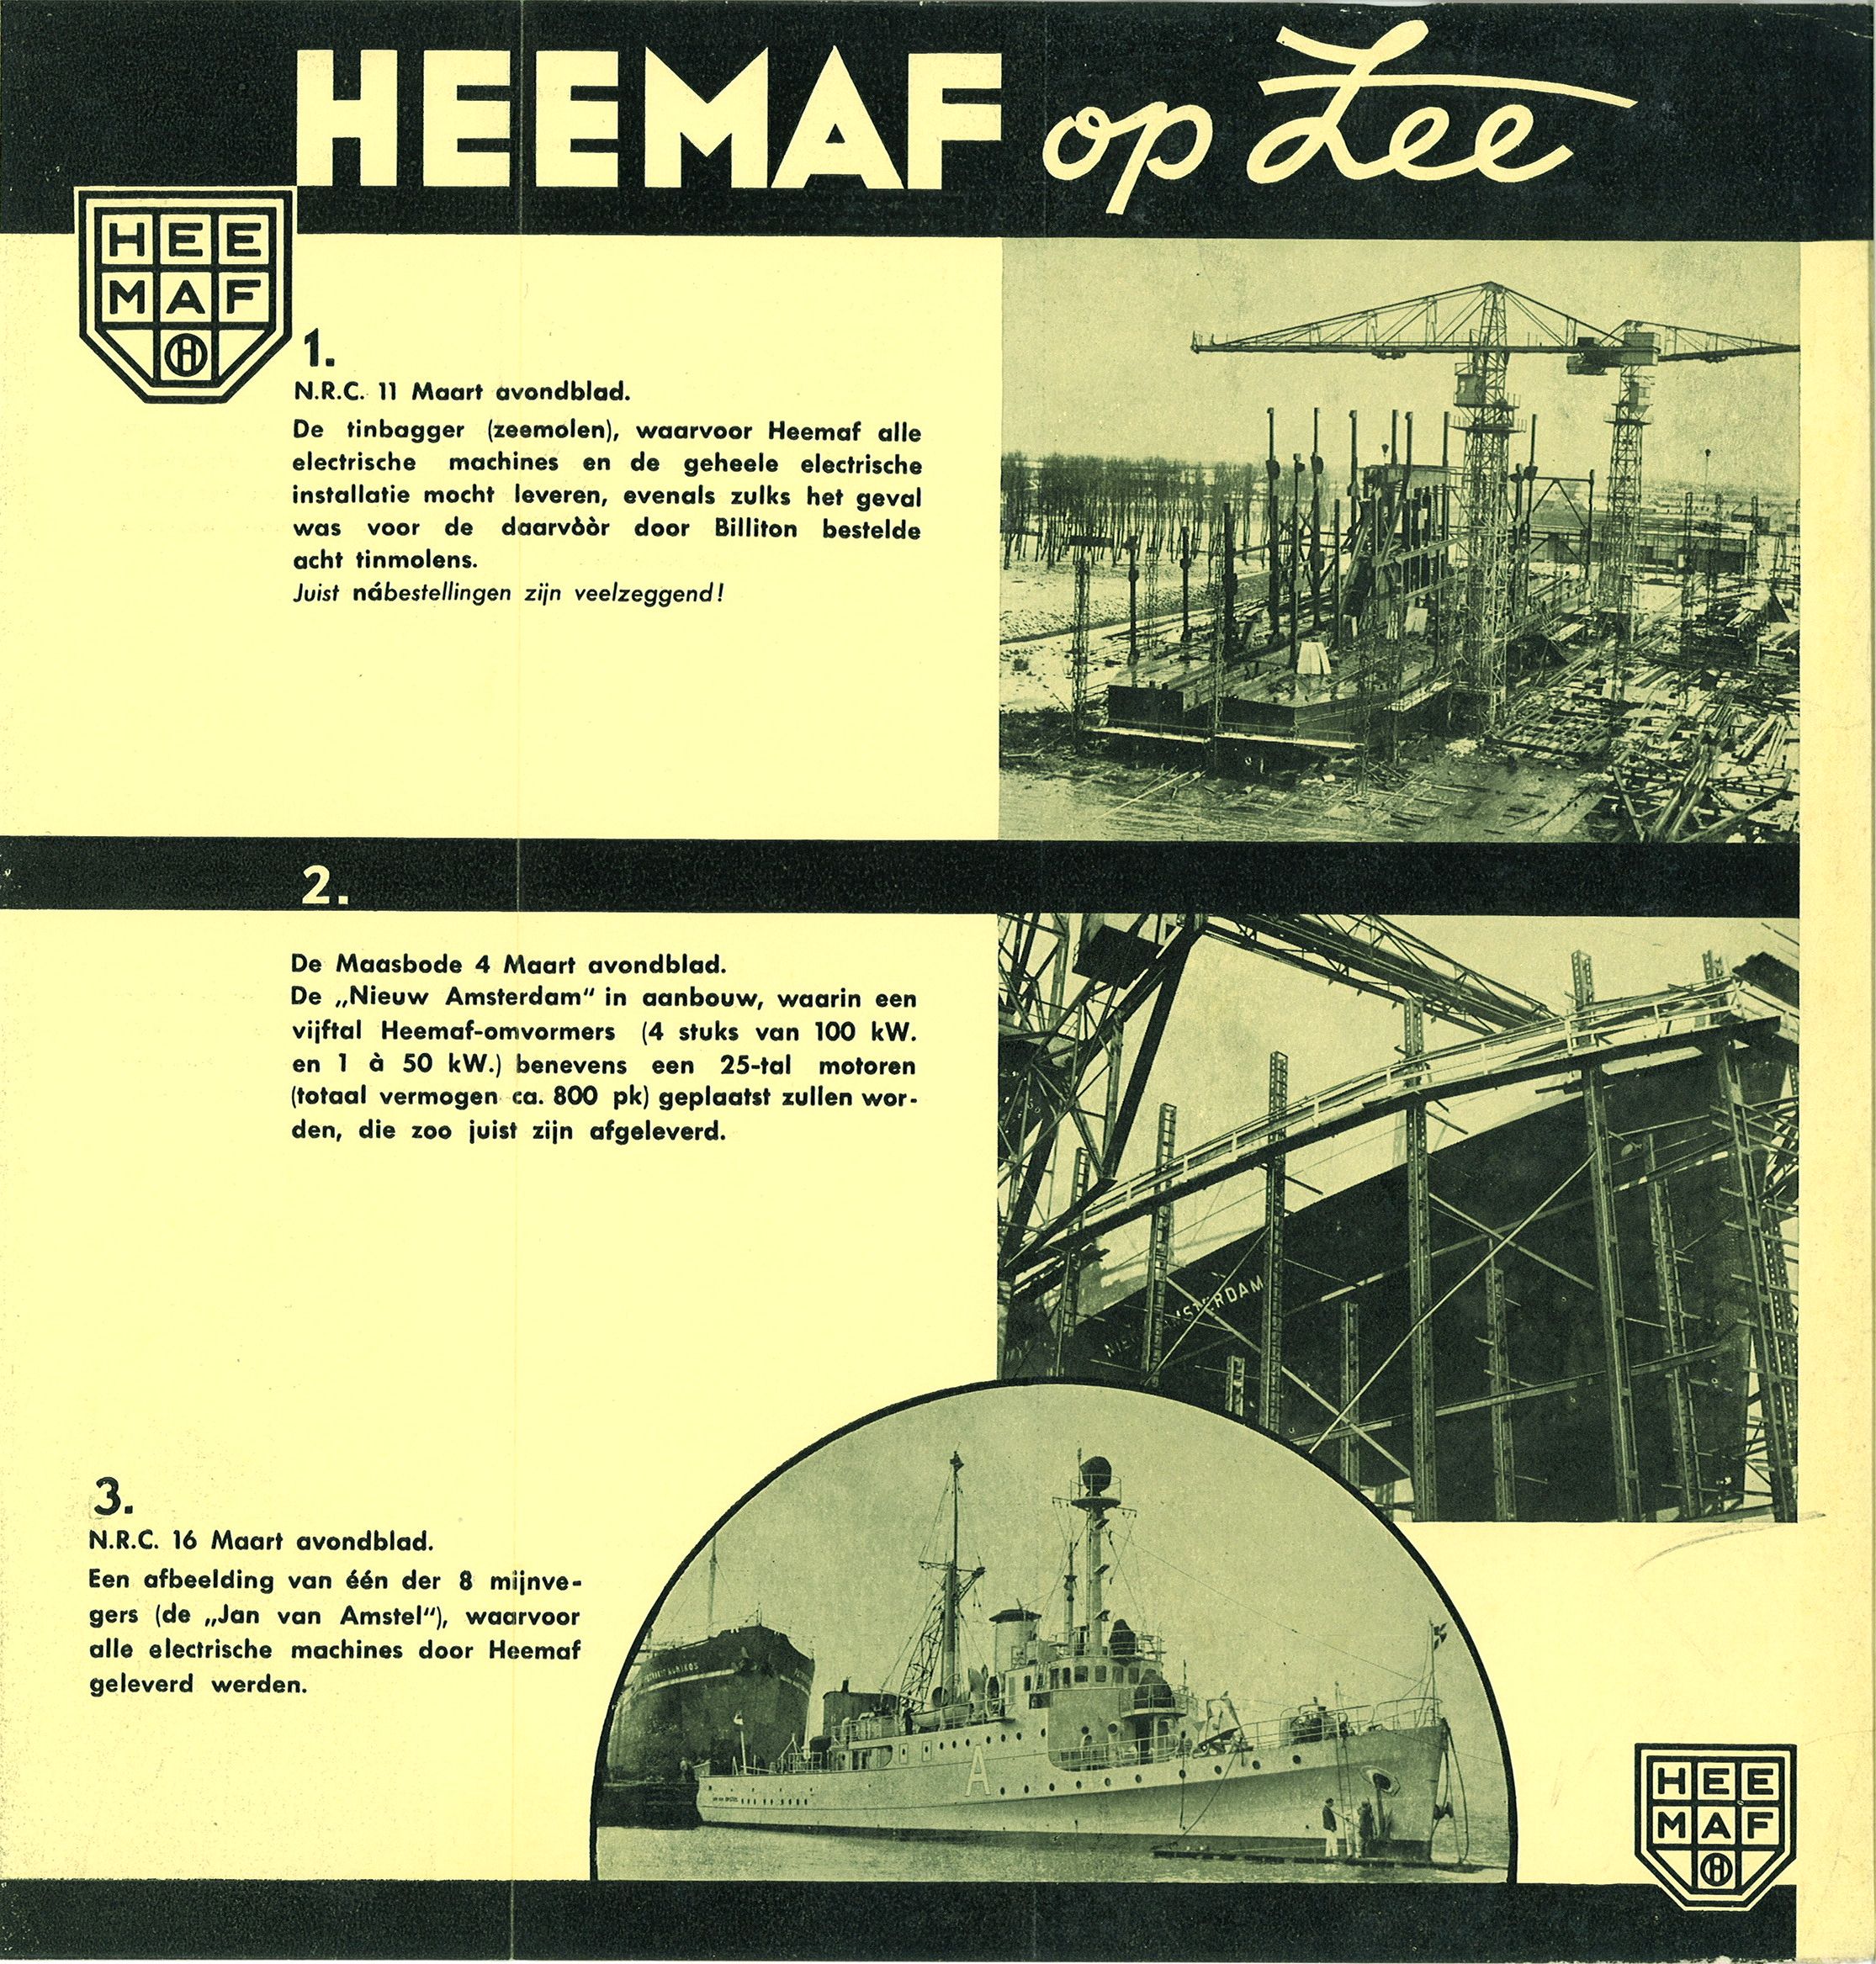 Heemaf op zee (1938)